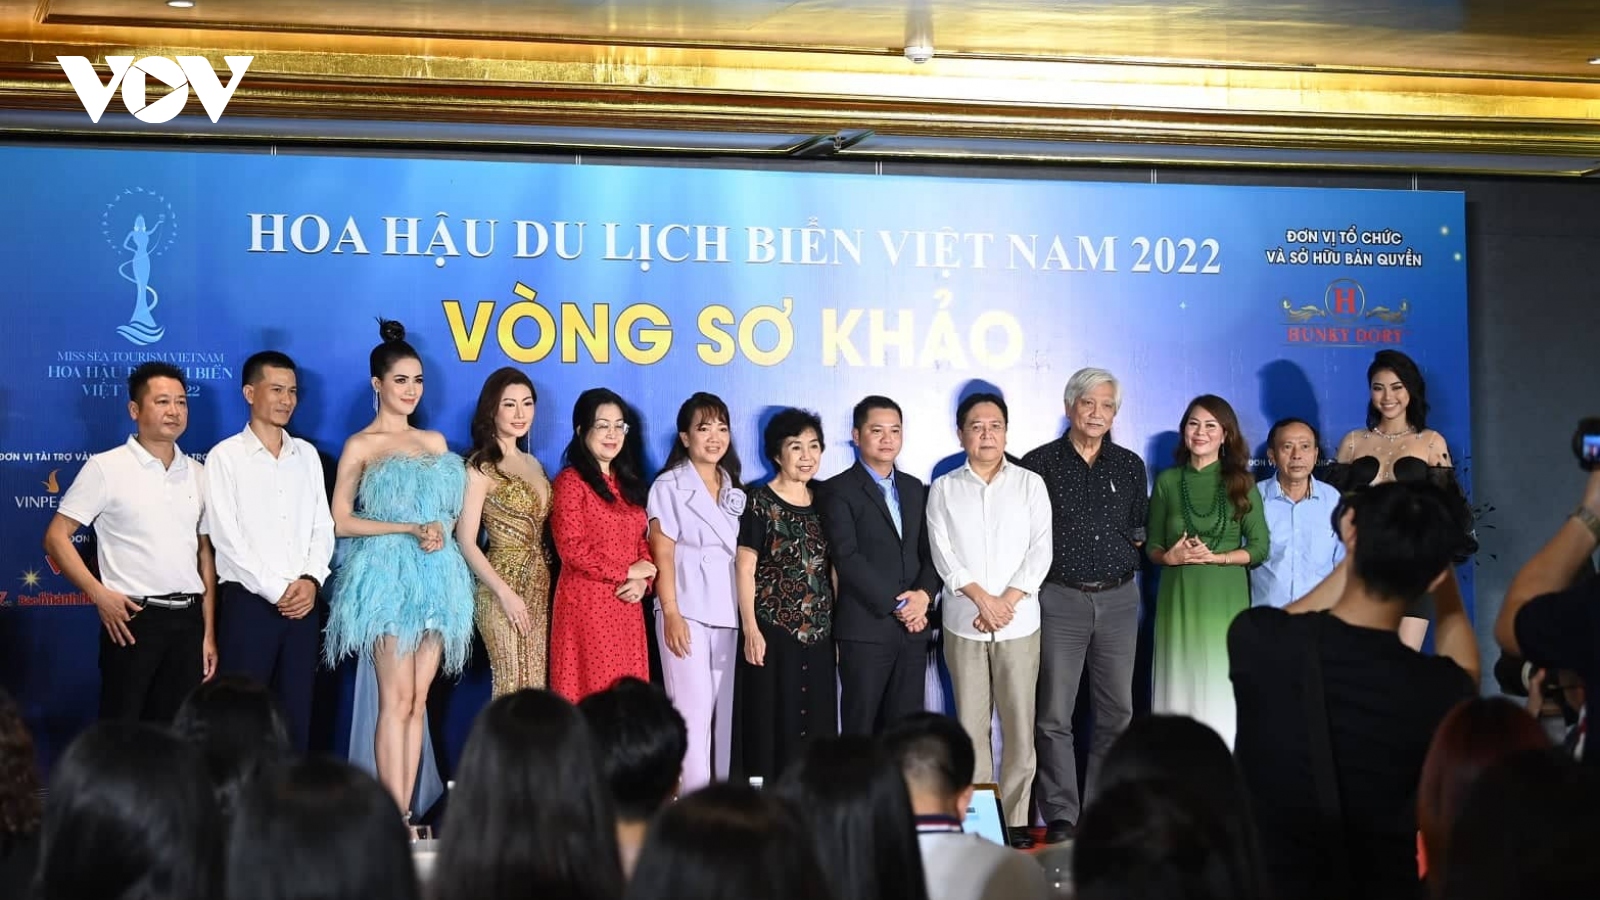 Sơ khảo khu vực miền Bắc cuộc thi Hoa hậu Du lịch Biển Việt Nam 2022 